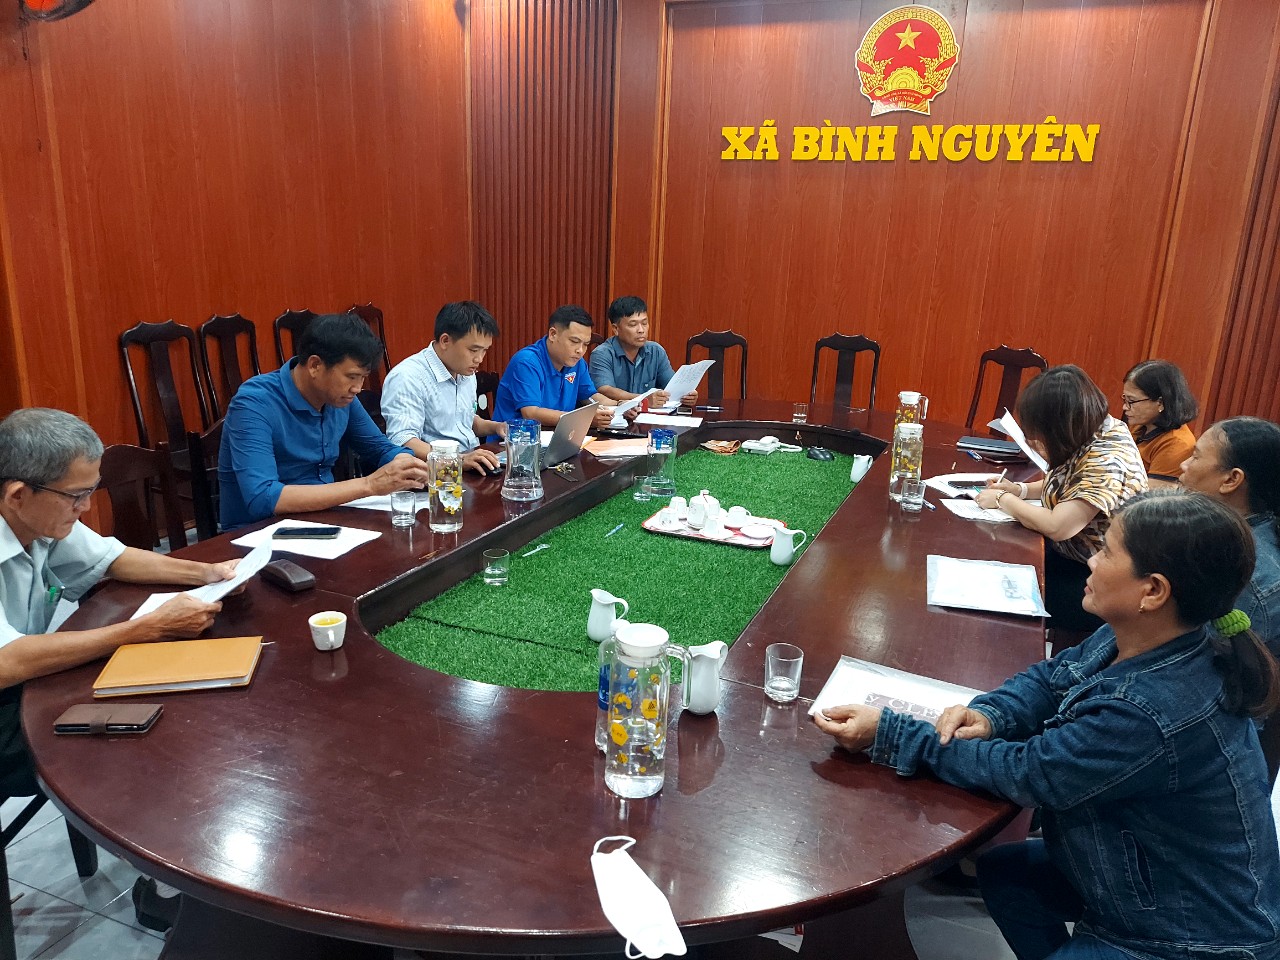 Đoàn xã Bình Nguyên tổ chức giám sát theo quyết định 217 của Bộ Chính trị